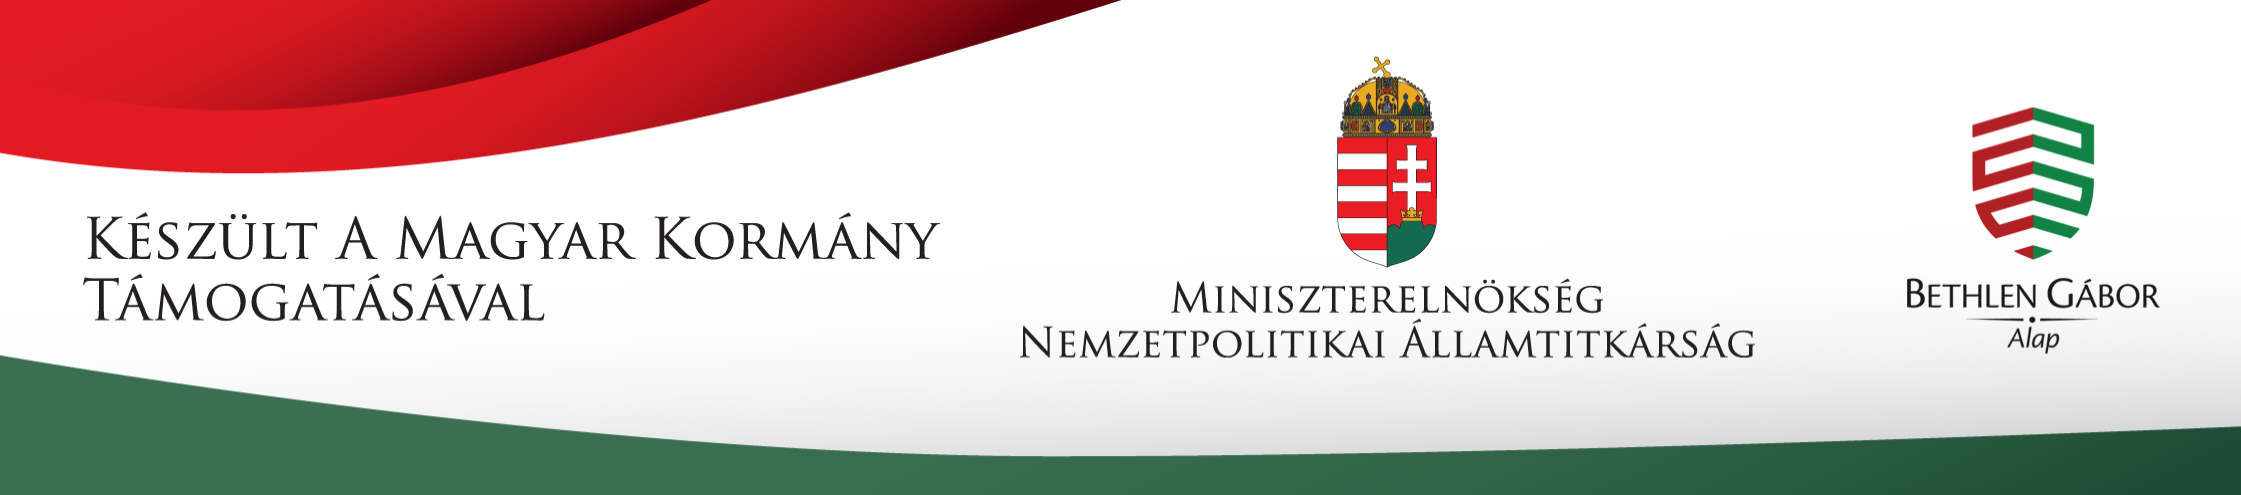 készült a magyar kormány támogatásával harmas logo 001